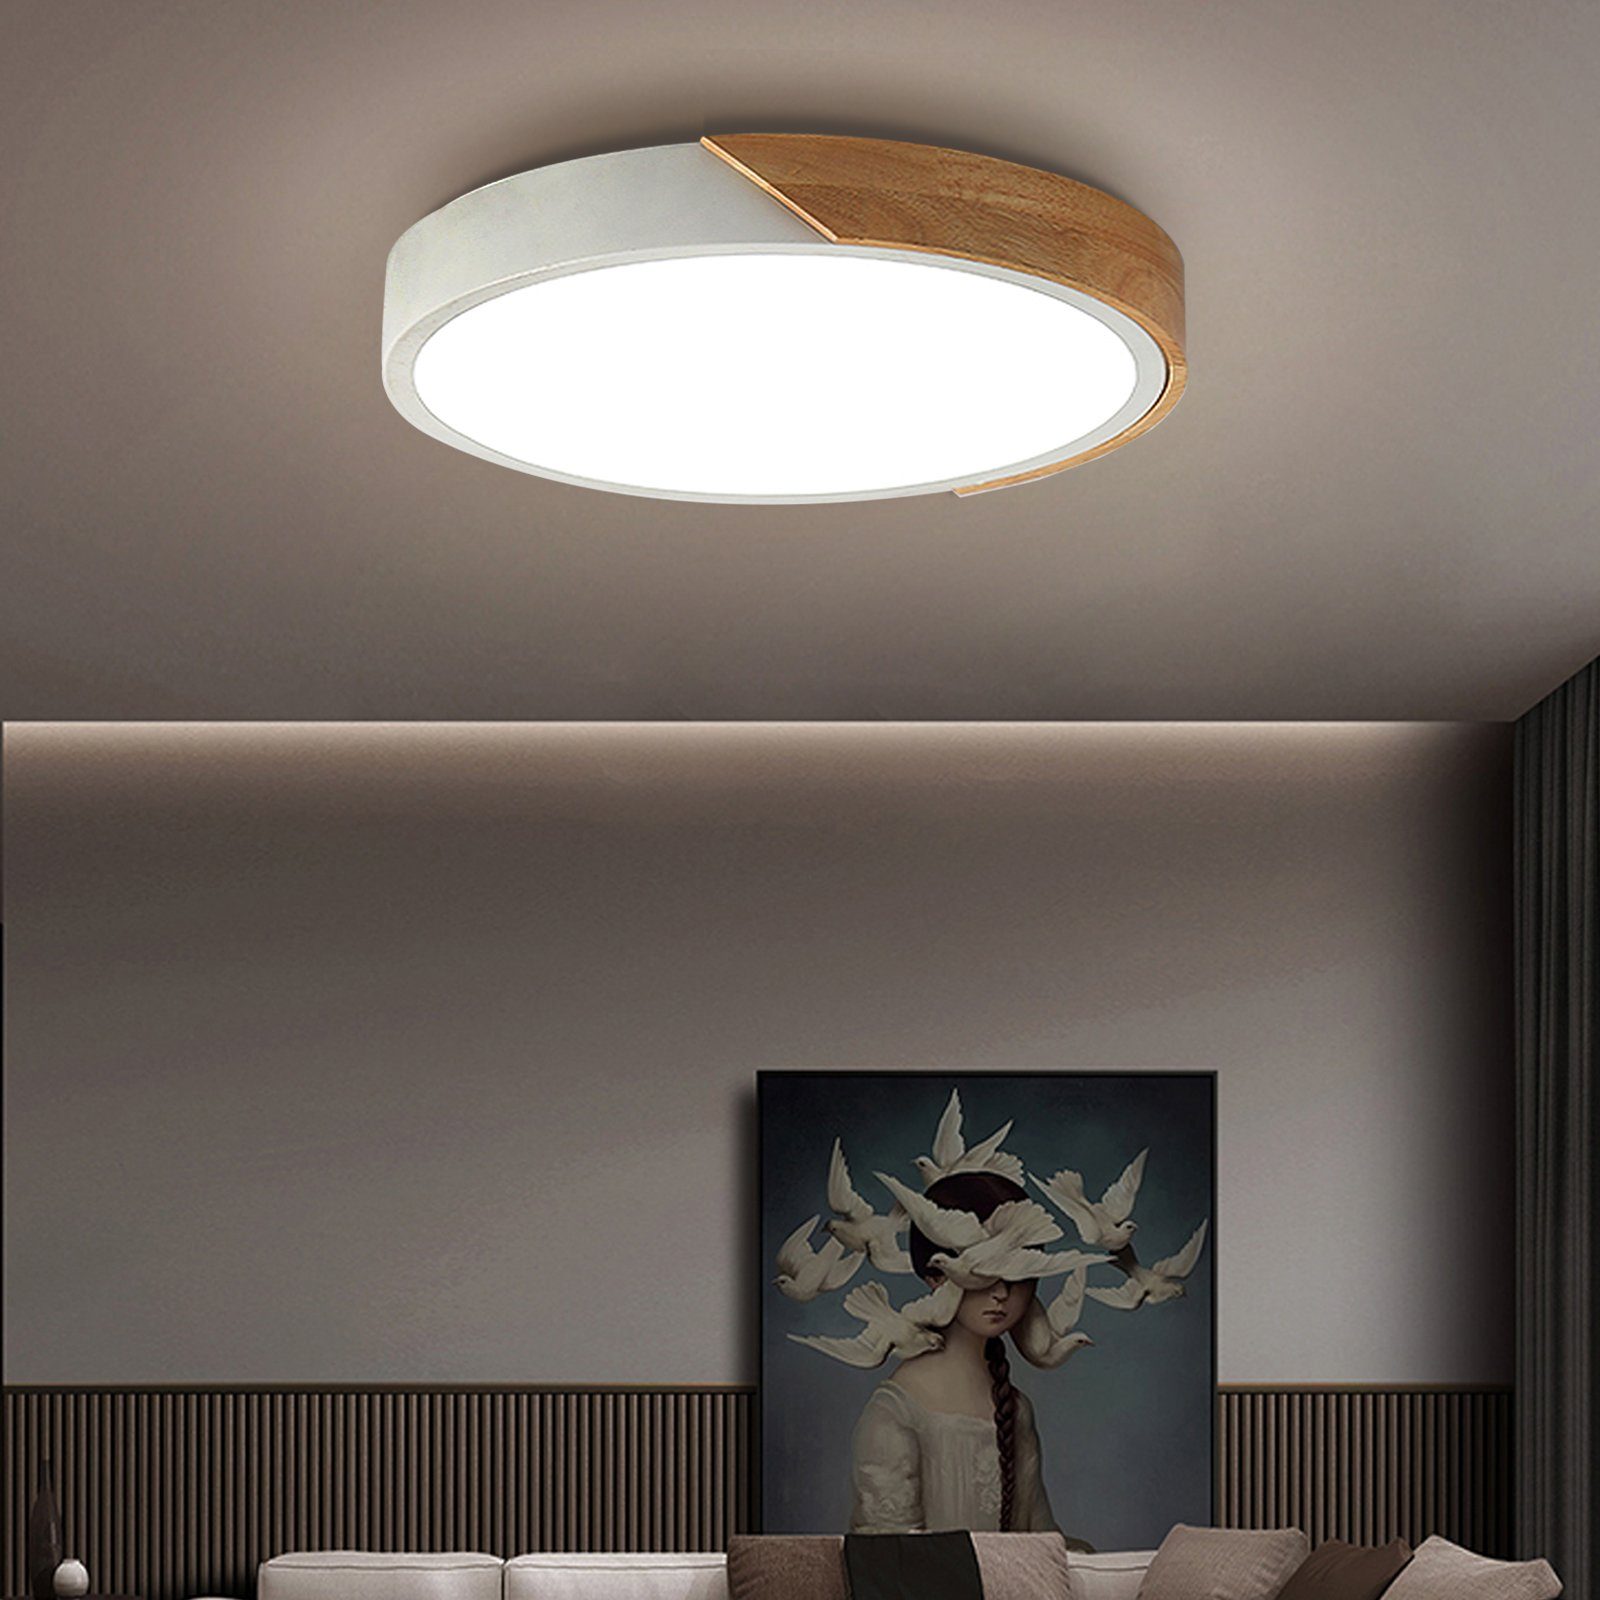 LED Decken Lampe Leuchte Beleuchtung Wohn Zimmer Diele Küche Flur 35cm-Ø rund 